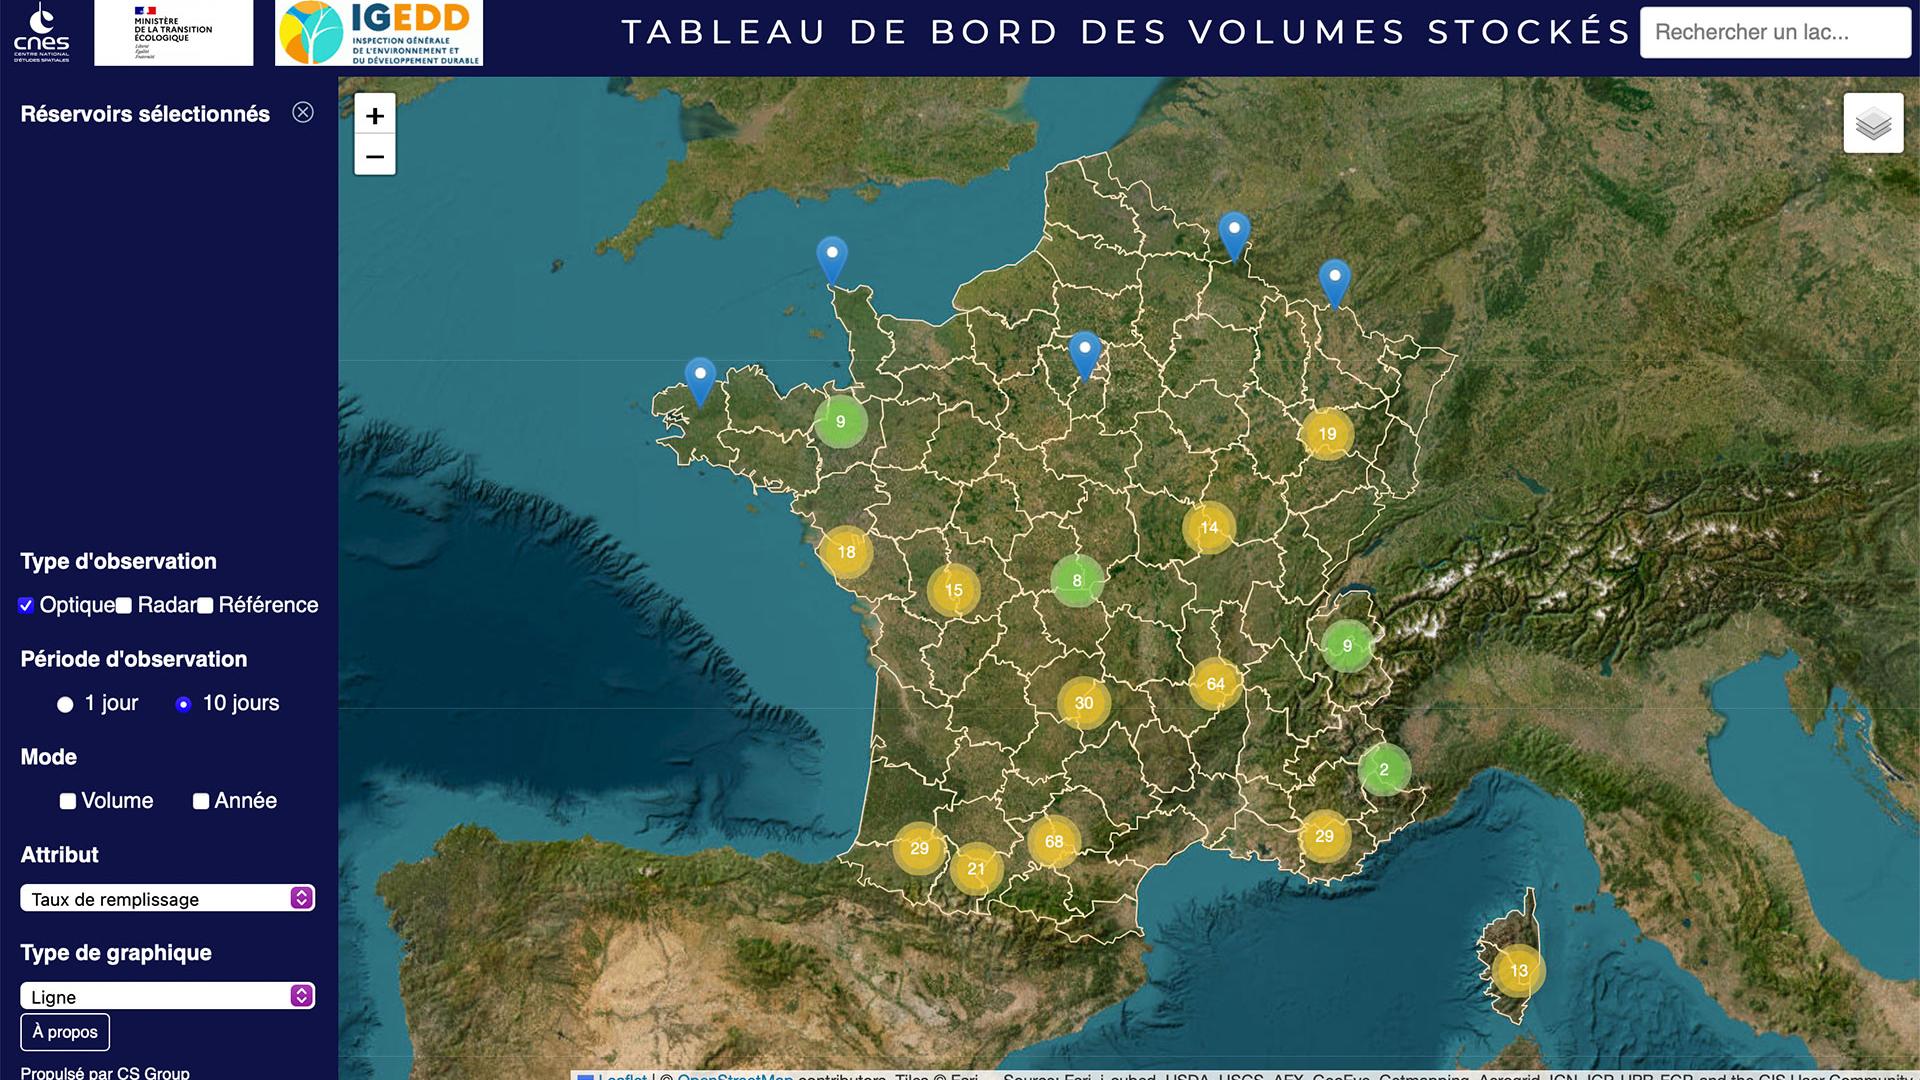 310 retenues d’eau françaises sont déjà quotidiennement suivies par satellite, elles seront 5 000 dès 2024. 